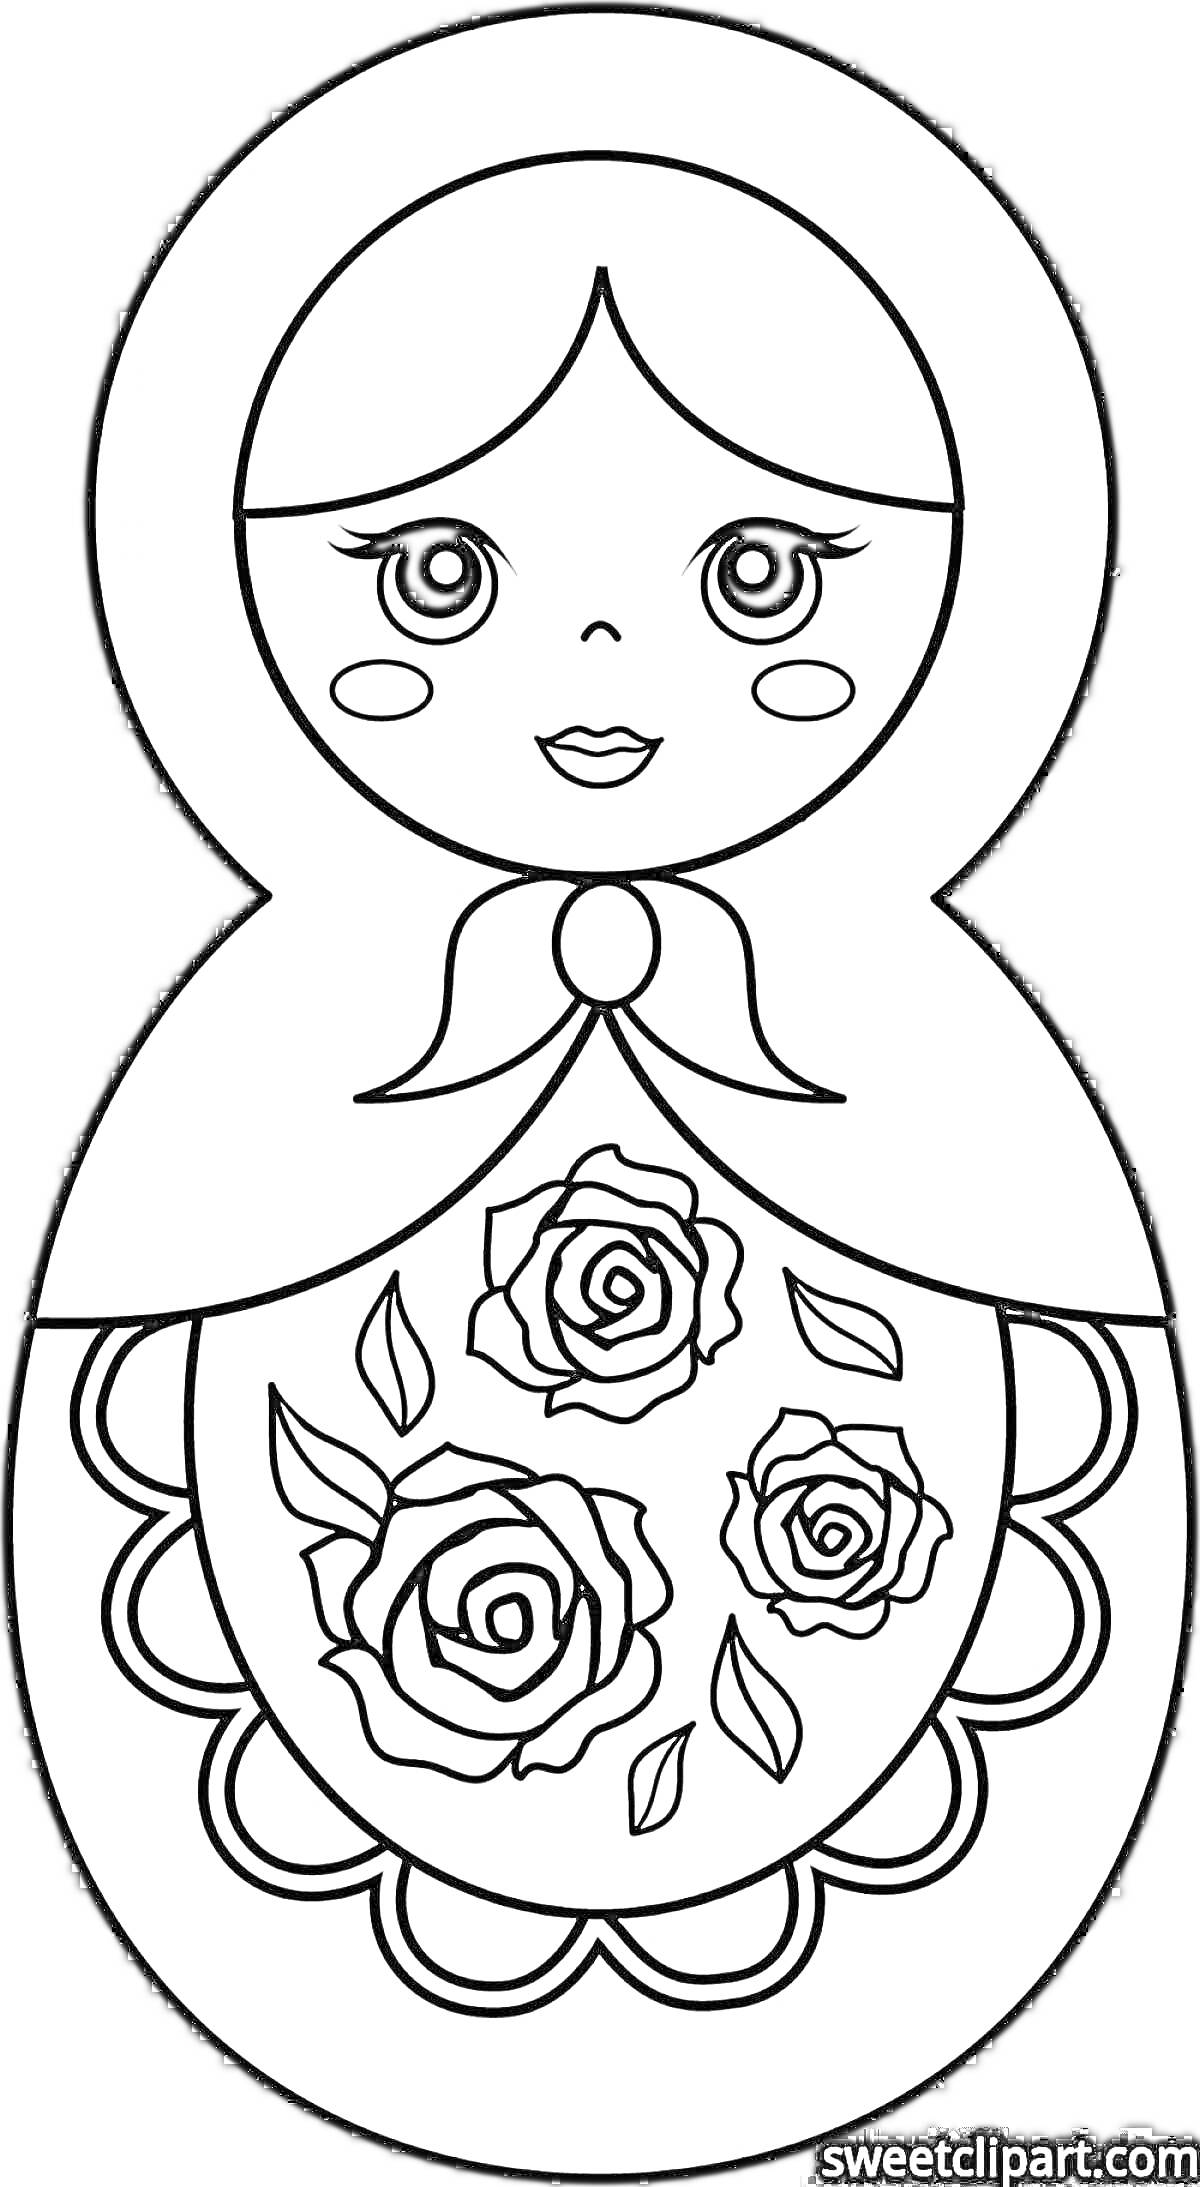 Раскраска Матрешка с розами на переднике, шарфик с бантом и кружевное украшение